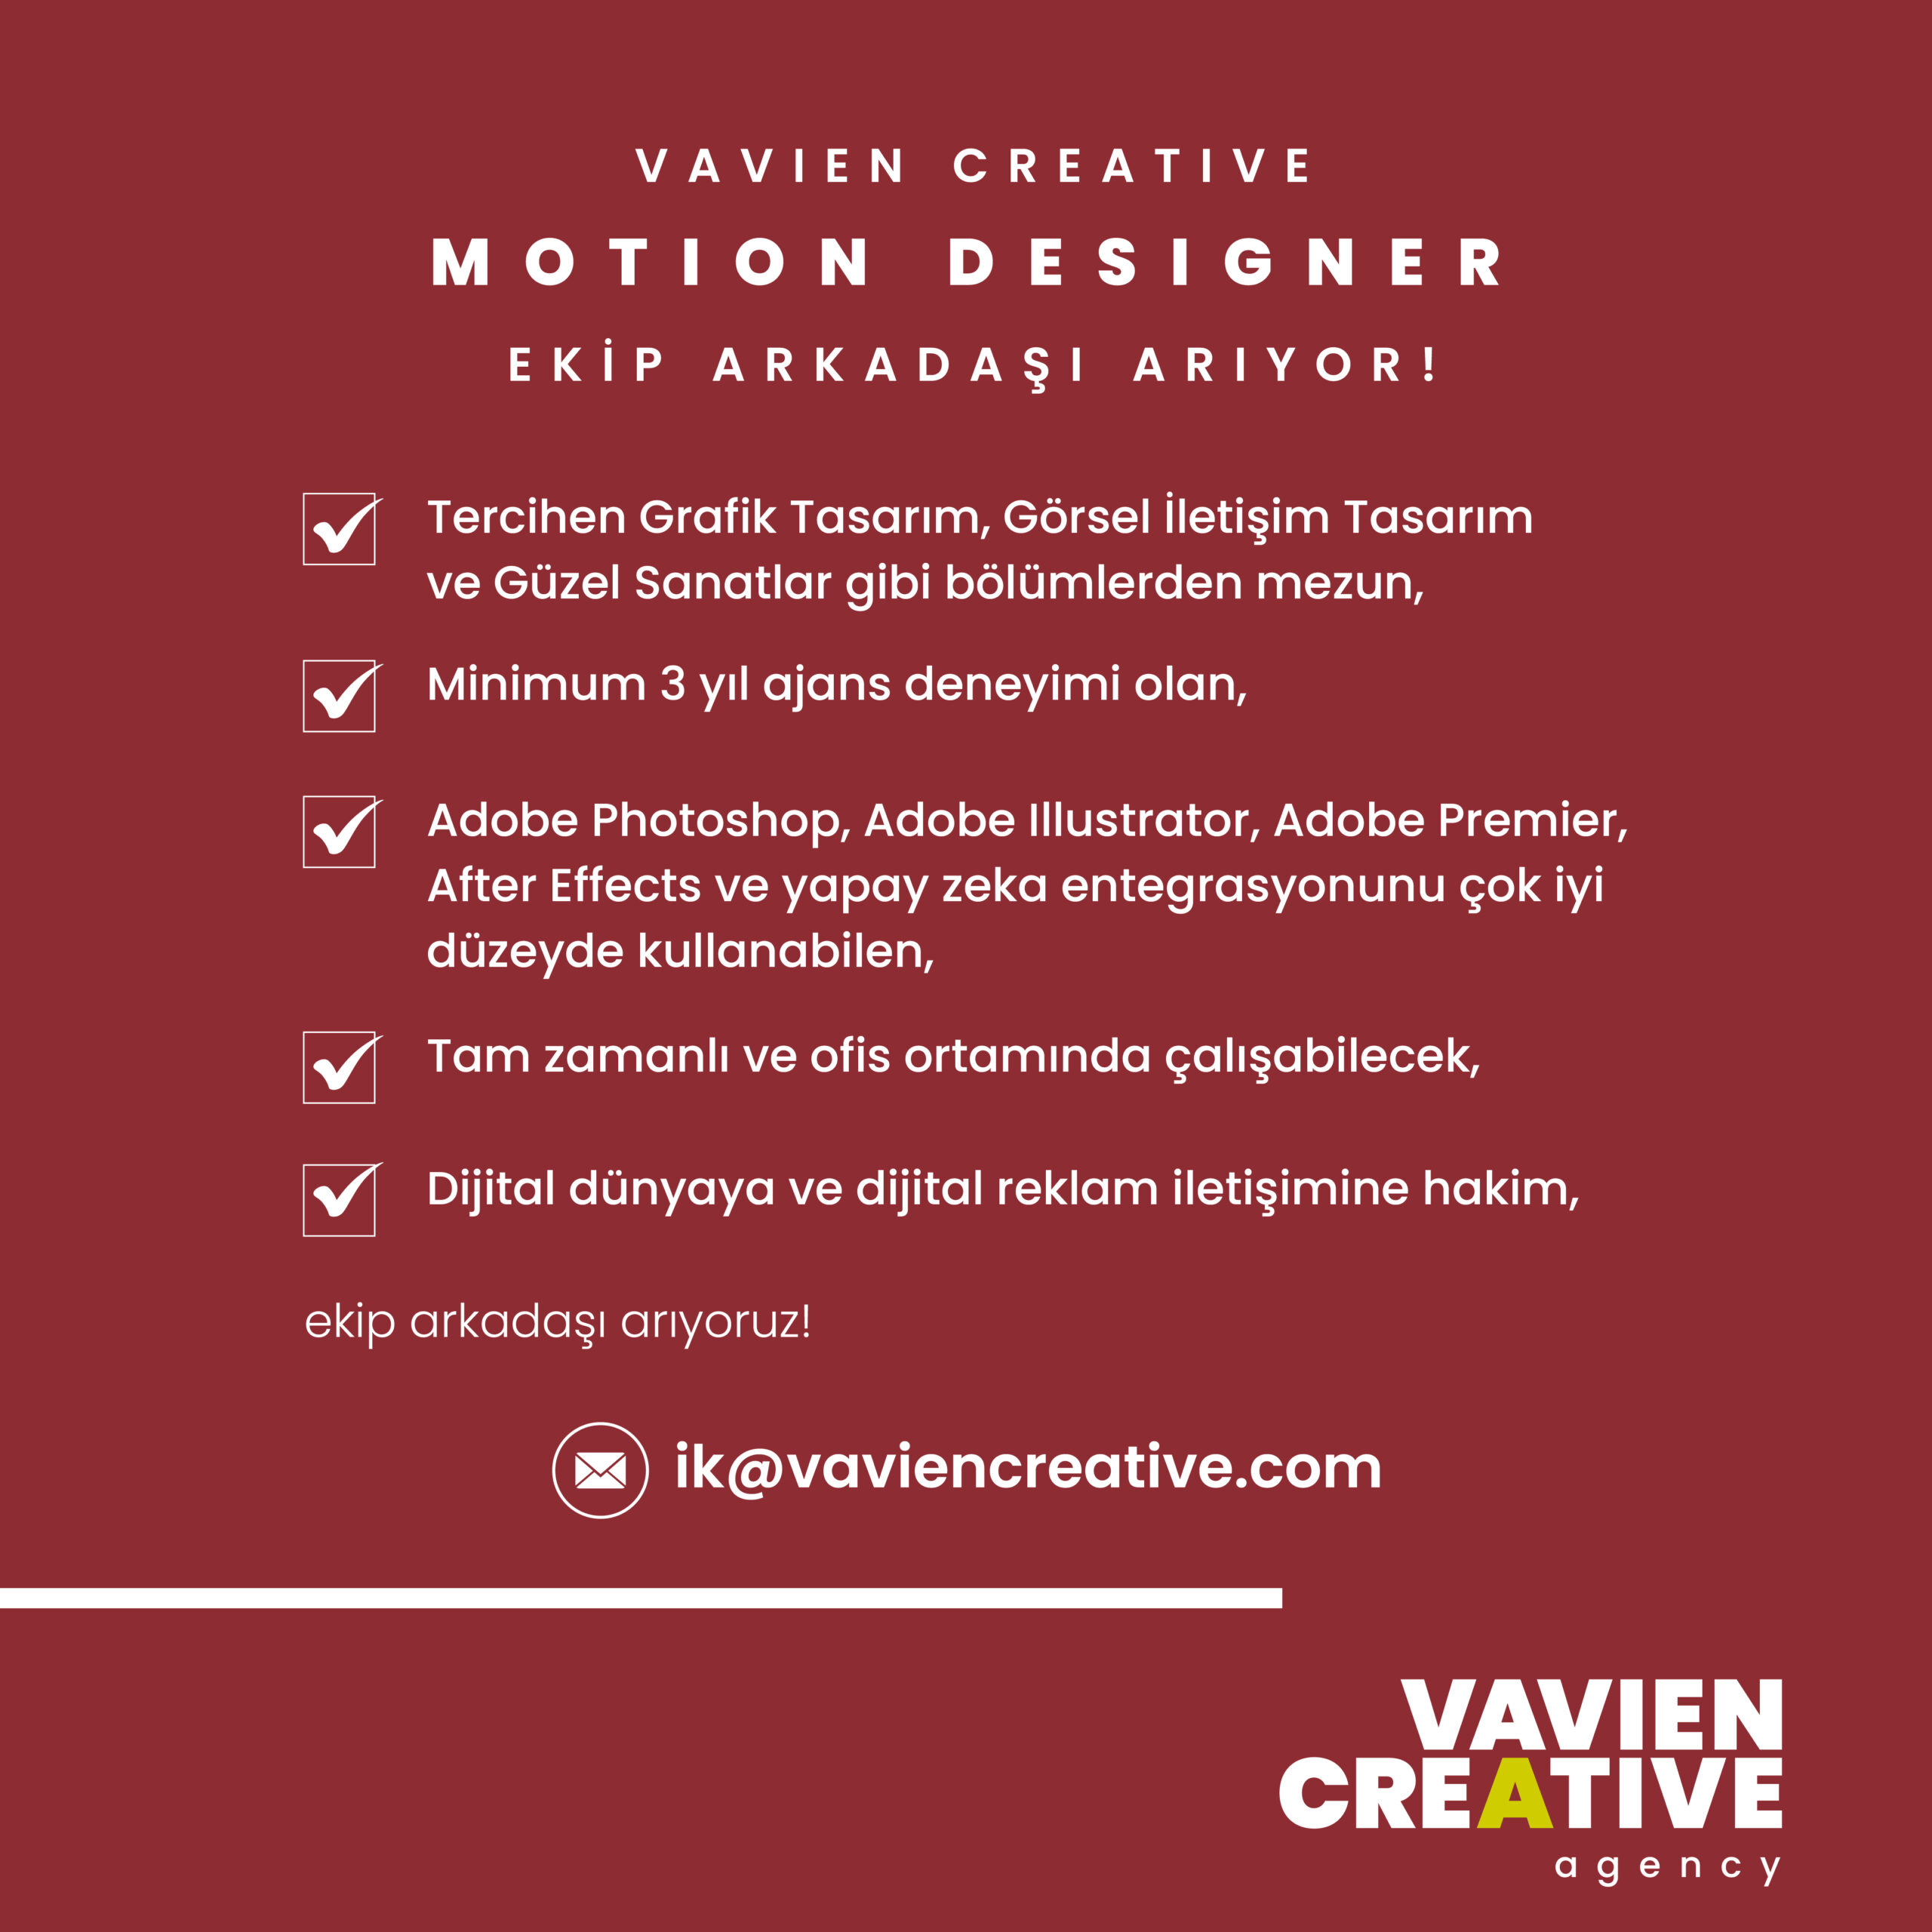 Vavien Creative, Motion Designer arıyor!